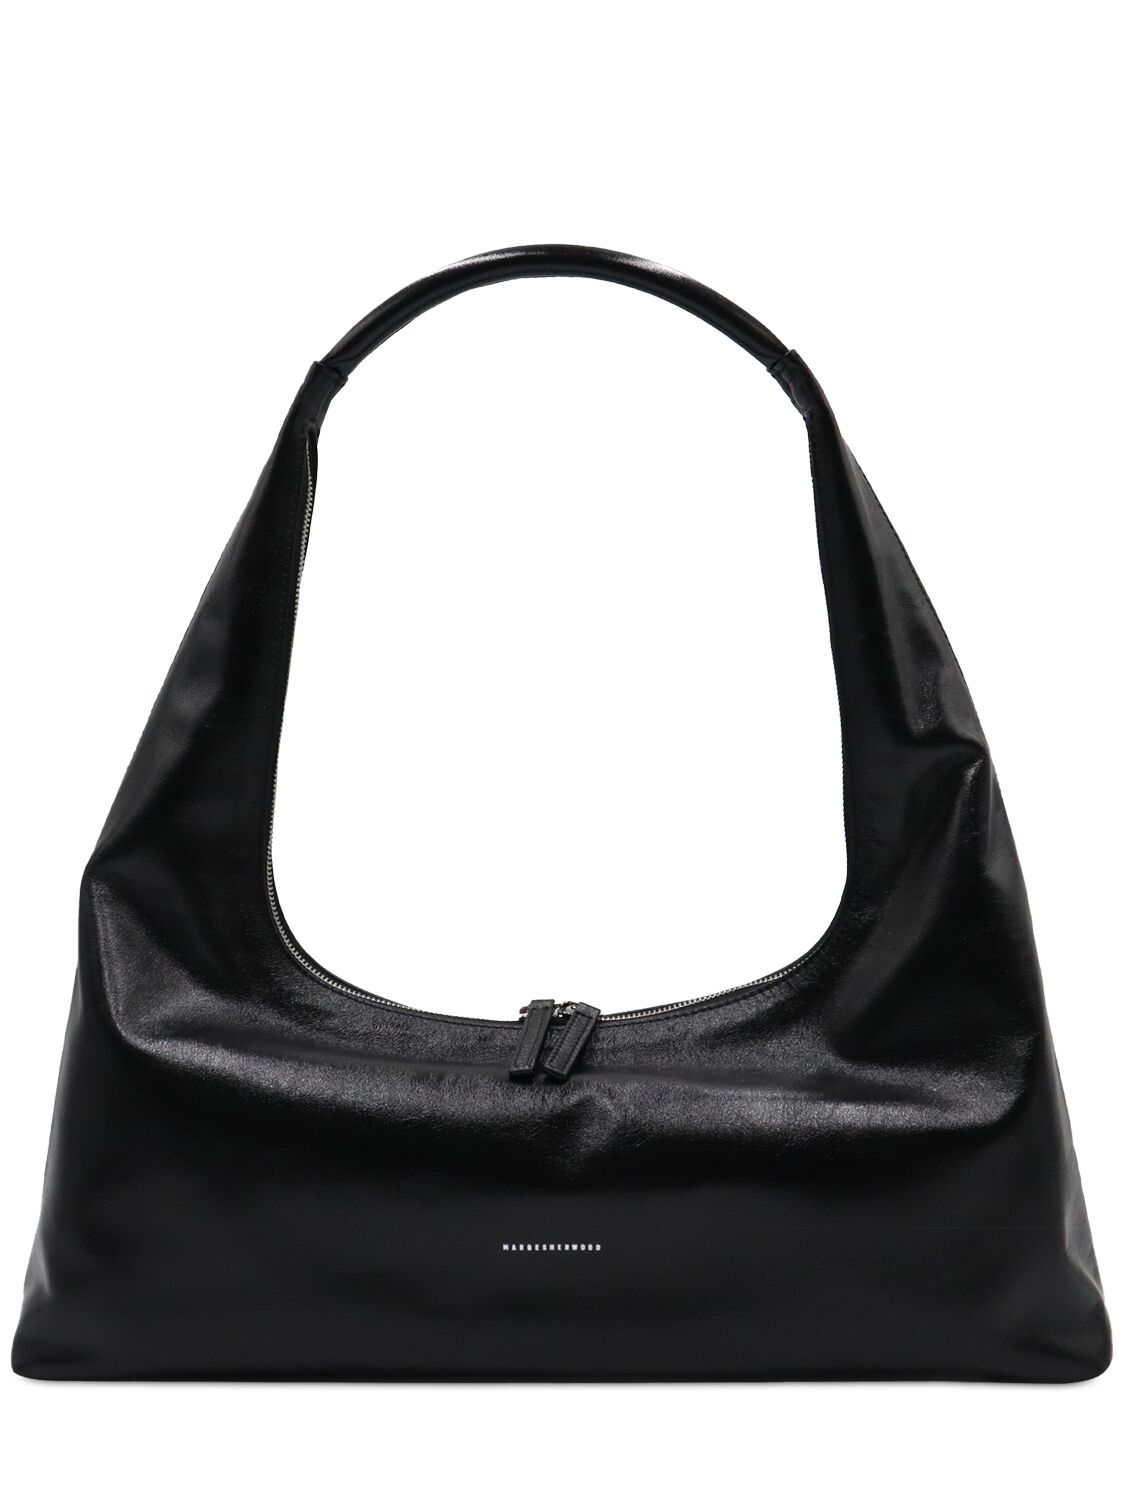 Marge Sherwood Large Hobo Plain Leather Shoulder Bag In Black Glossy Pl